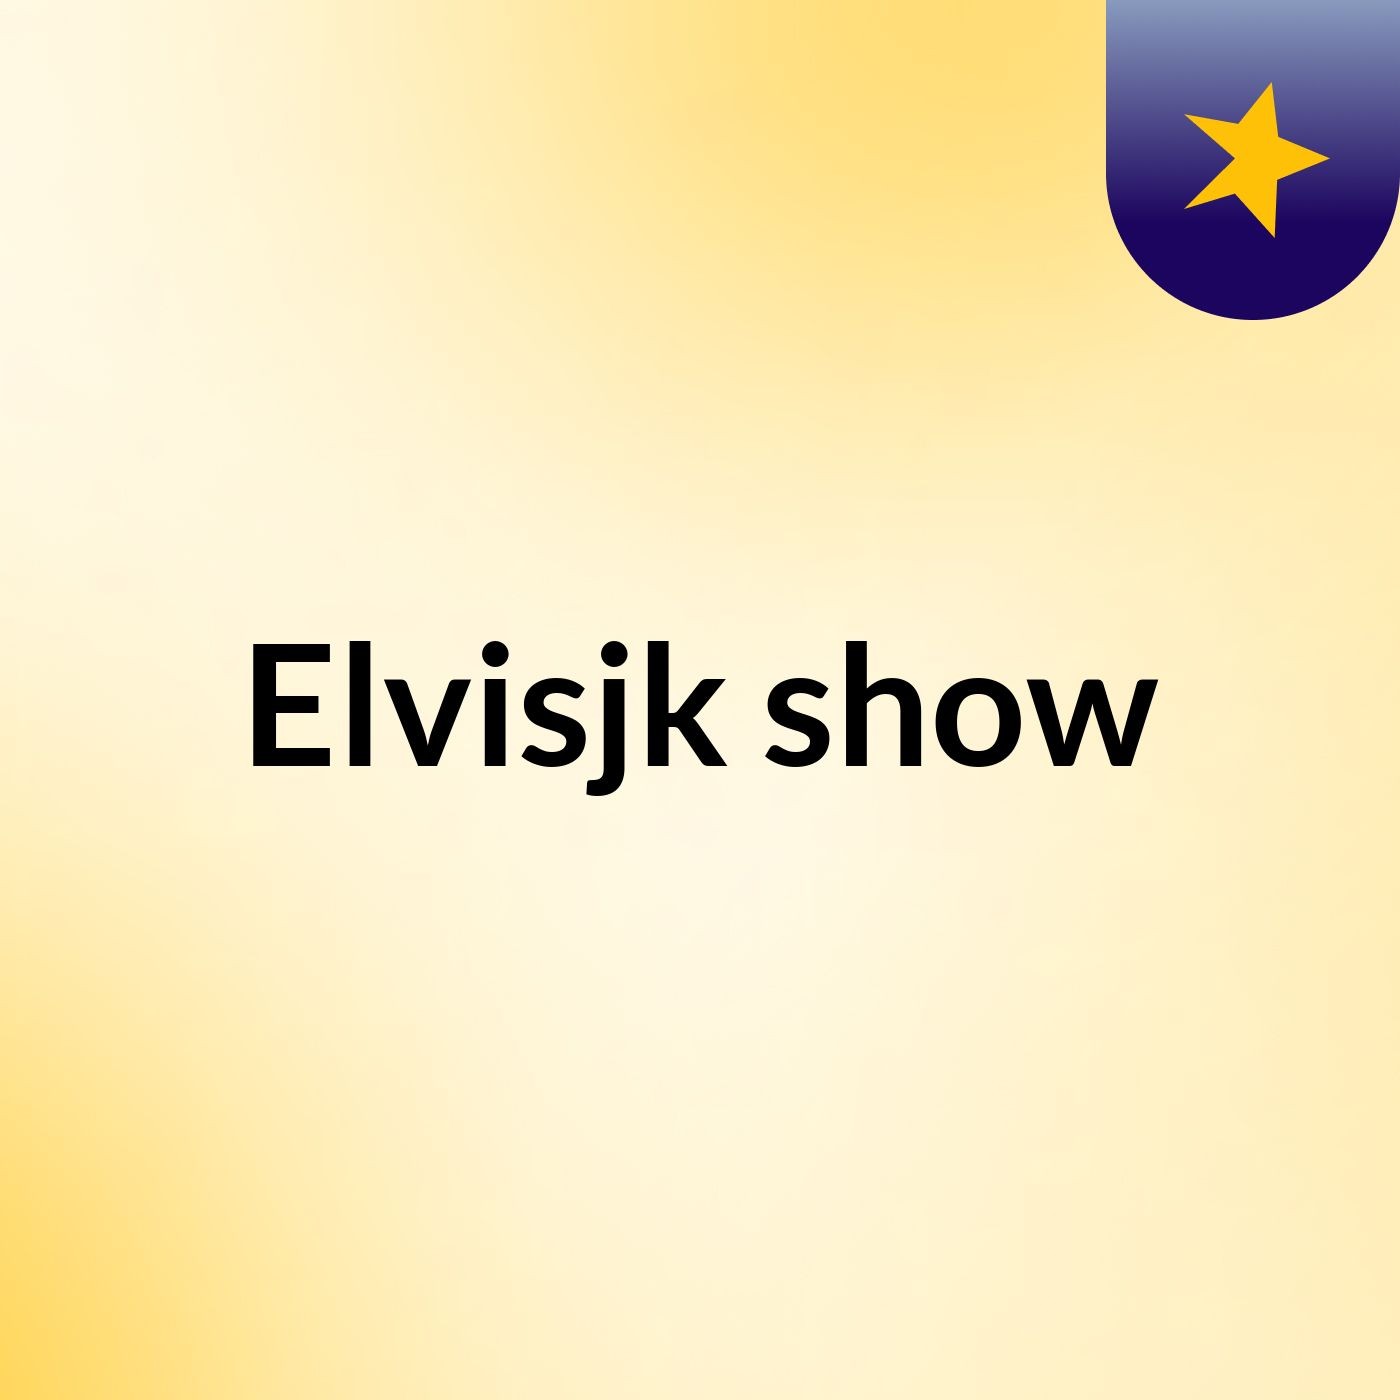 Elvisjk show